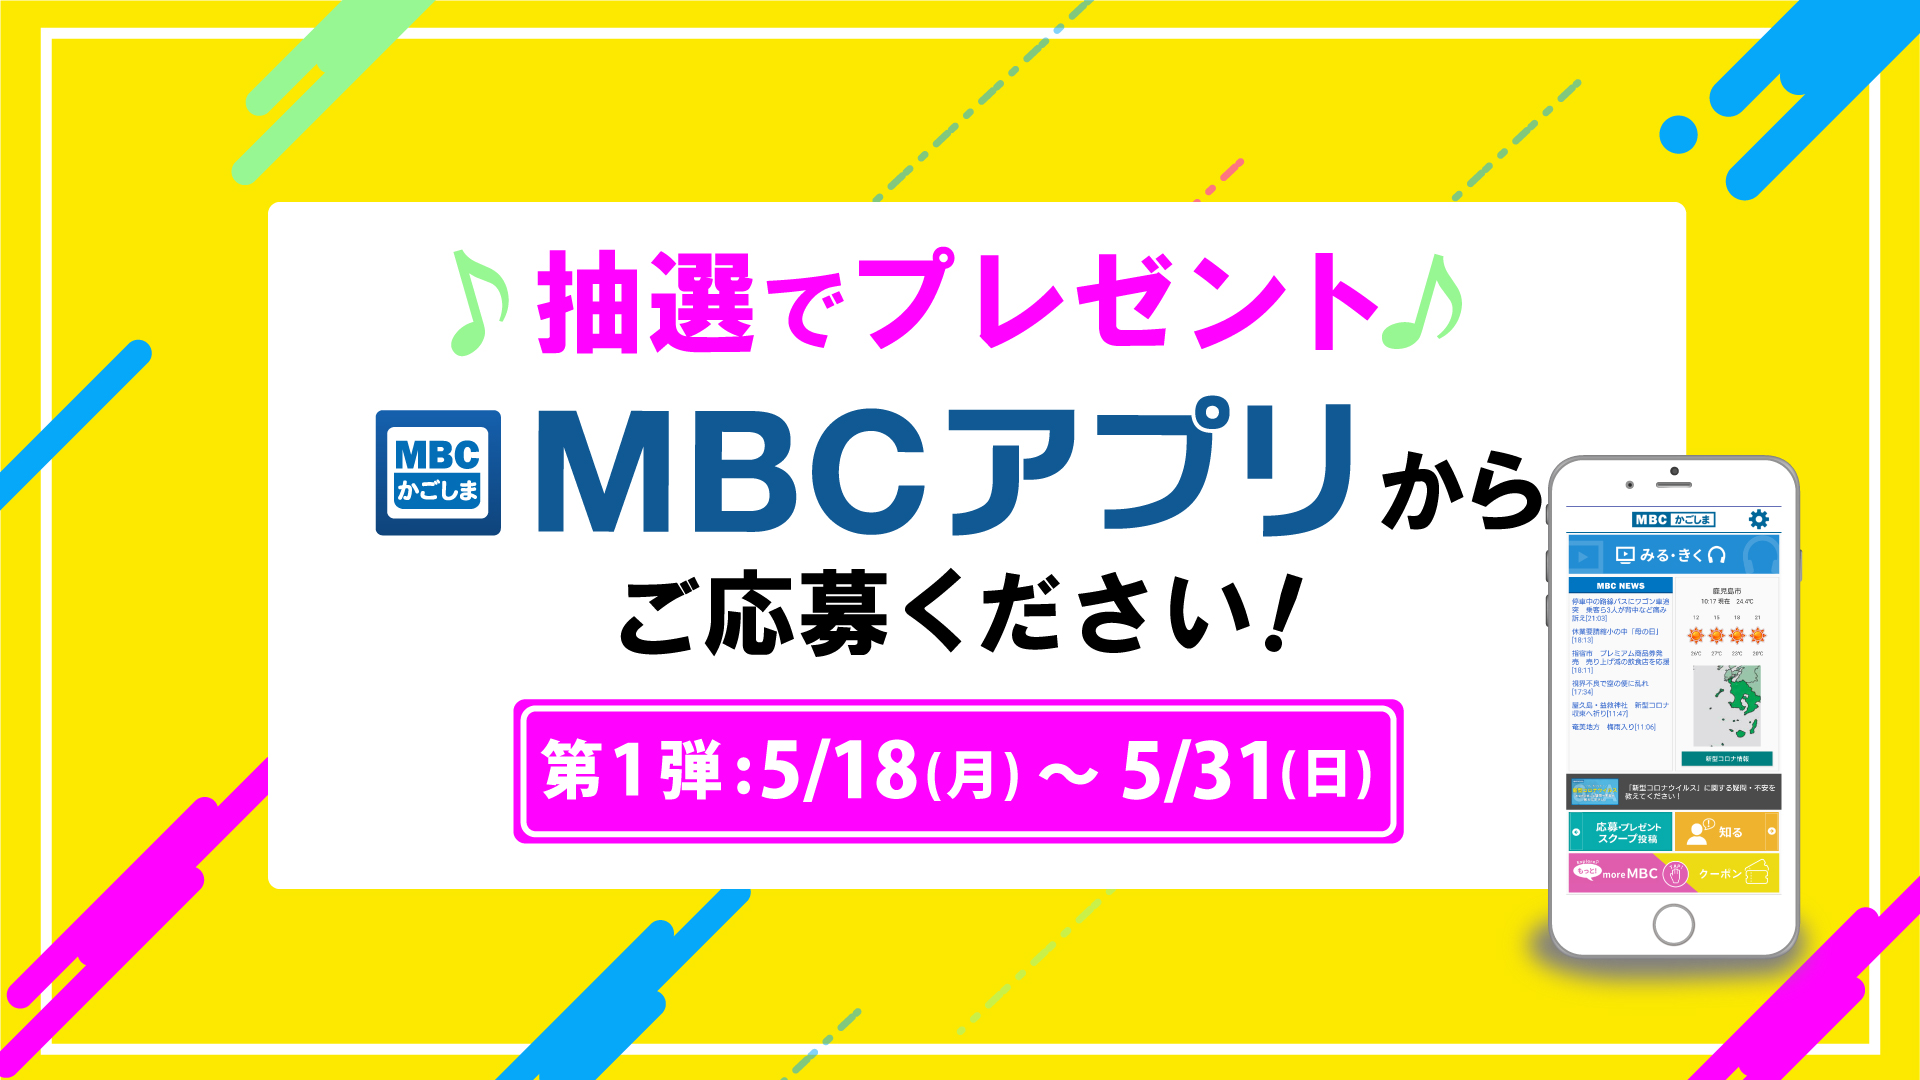 MBCアプリ おうちで楽しもう キャンペーン【第1弾】